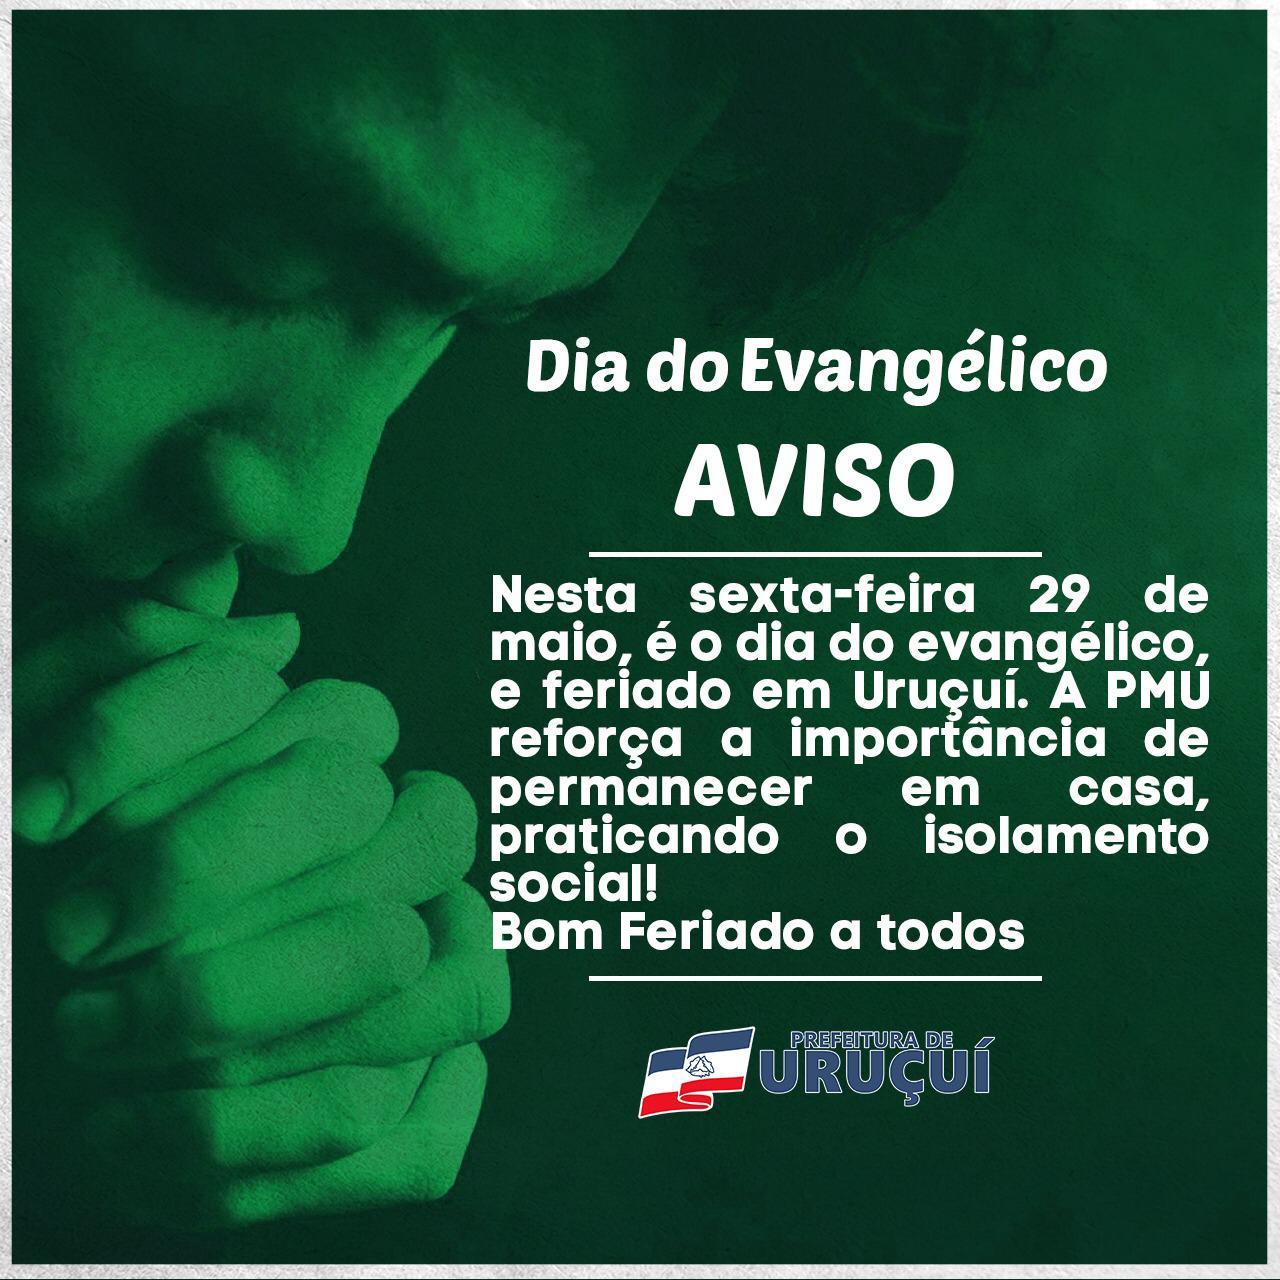 FERIADO MUNICIPAL: Dia do Evangélico passa a ser comemorado em 31/08 em  Rosário Oeste